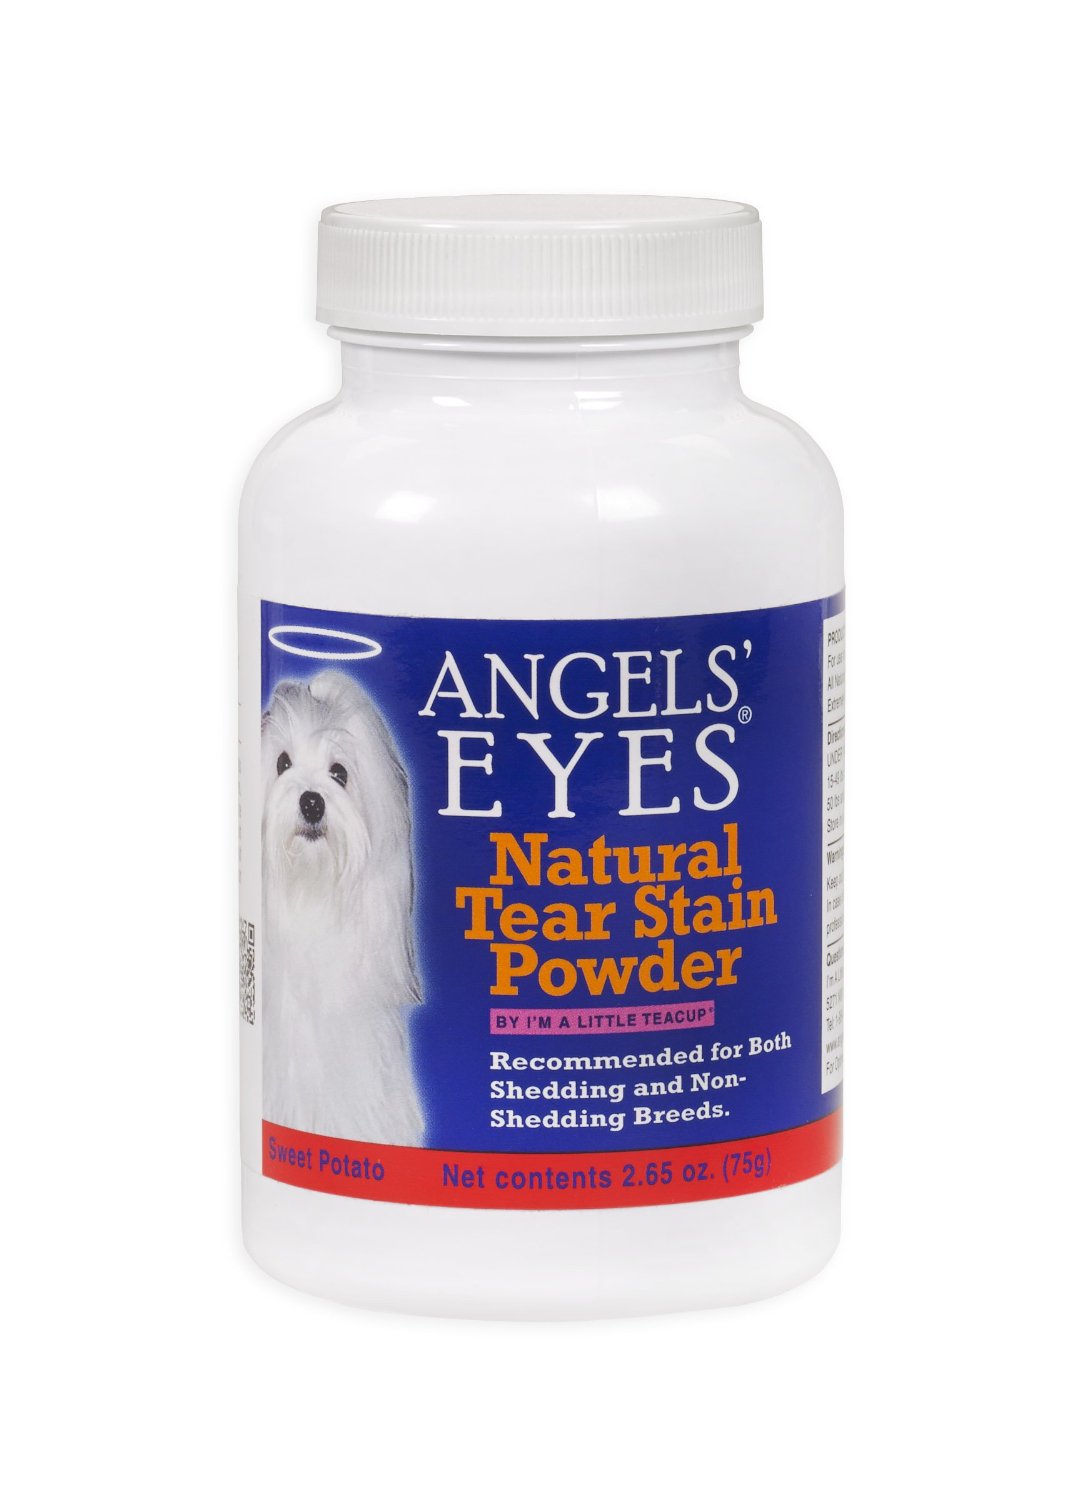 美國天使之眼淚痕保健粉
Angels’ Eyes Natural Pet Food Sweet Potato Flavor Dog